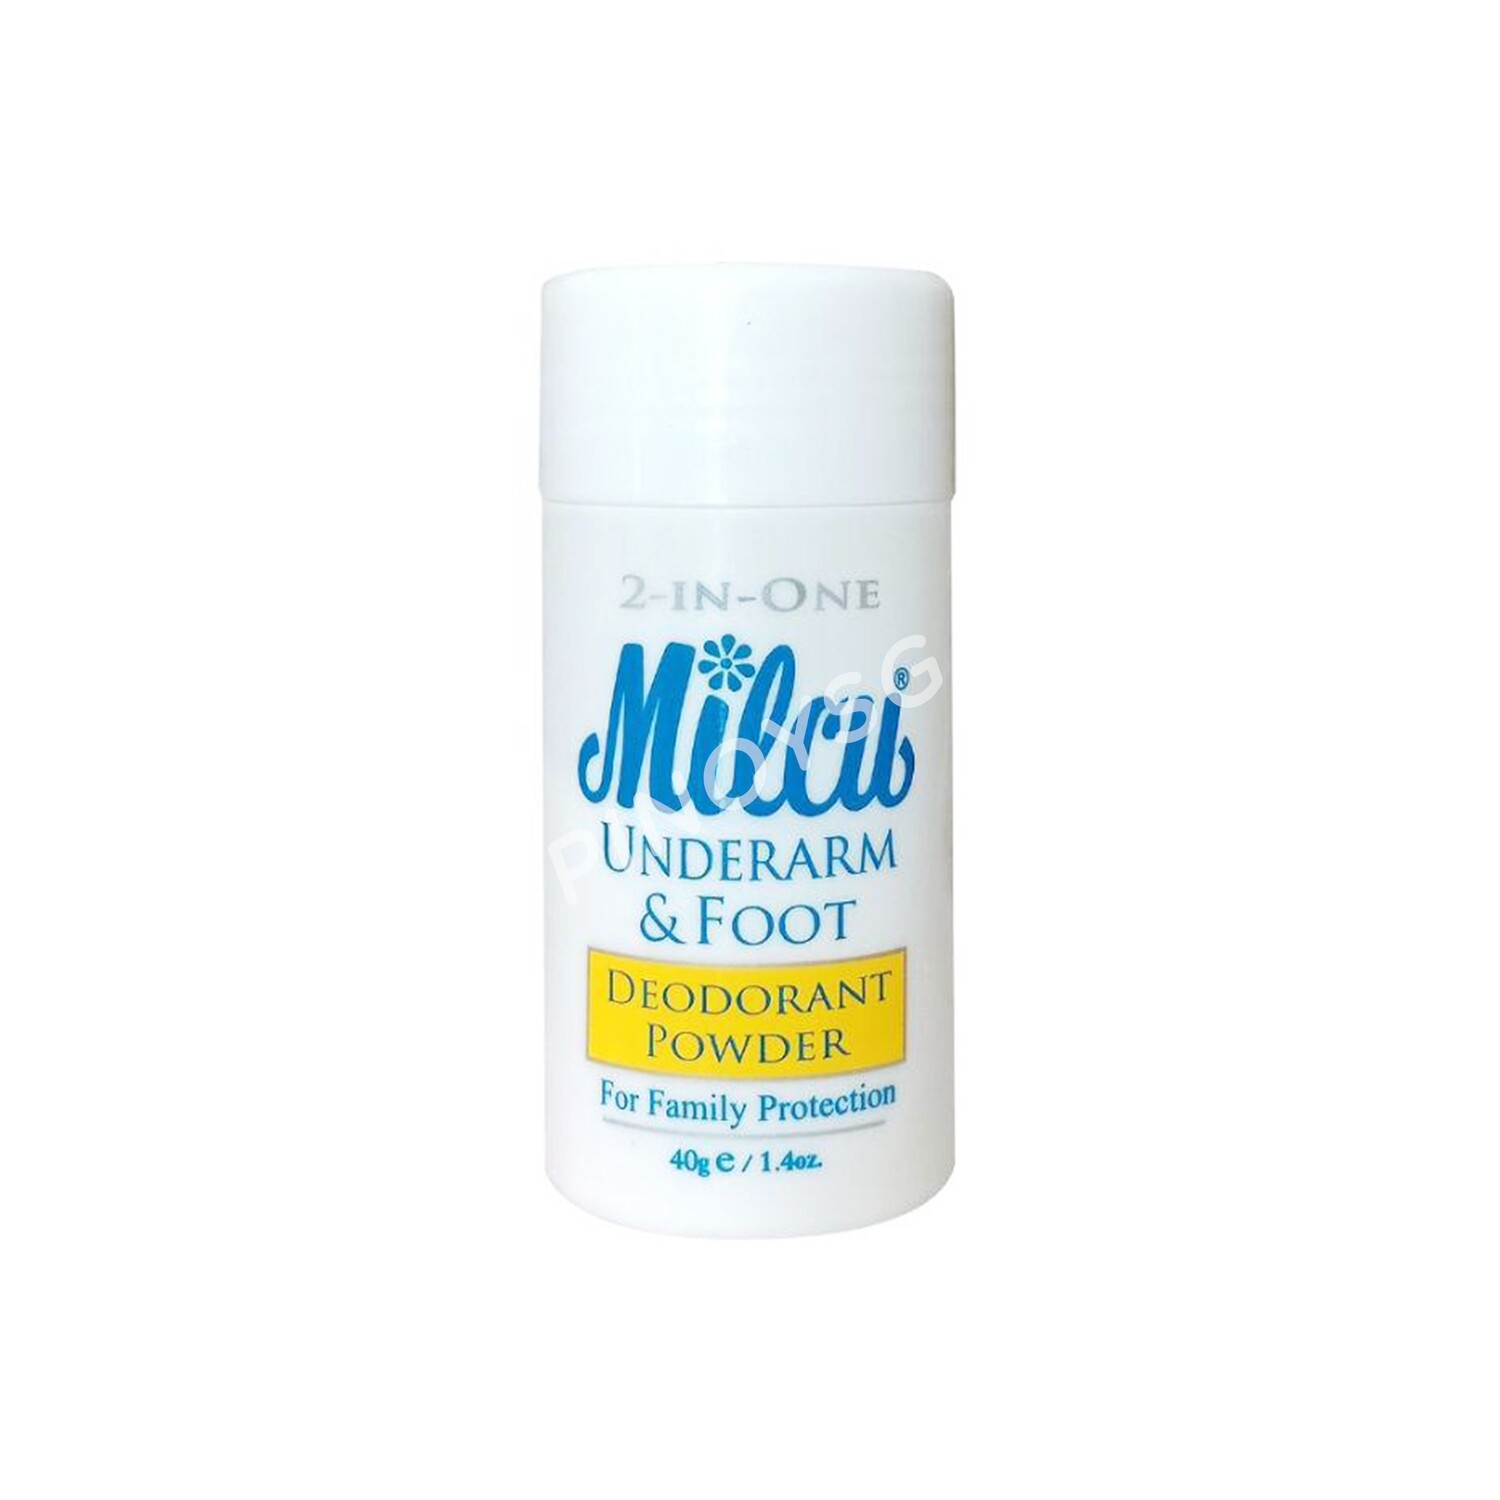 Milcu Underarm  Foot Deodorant Powder, 40g